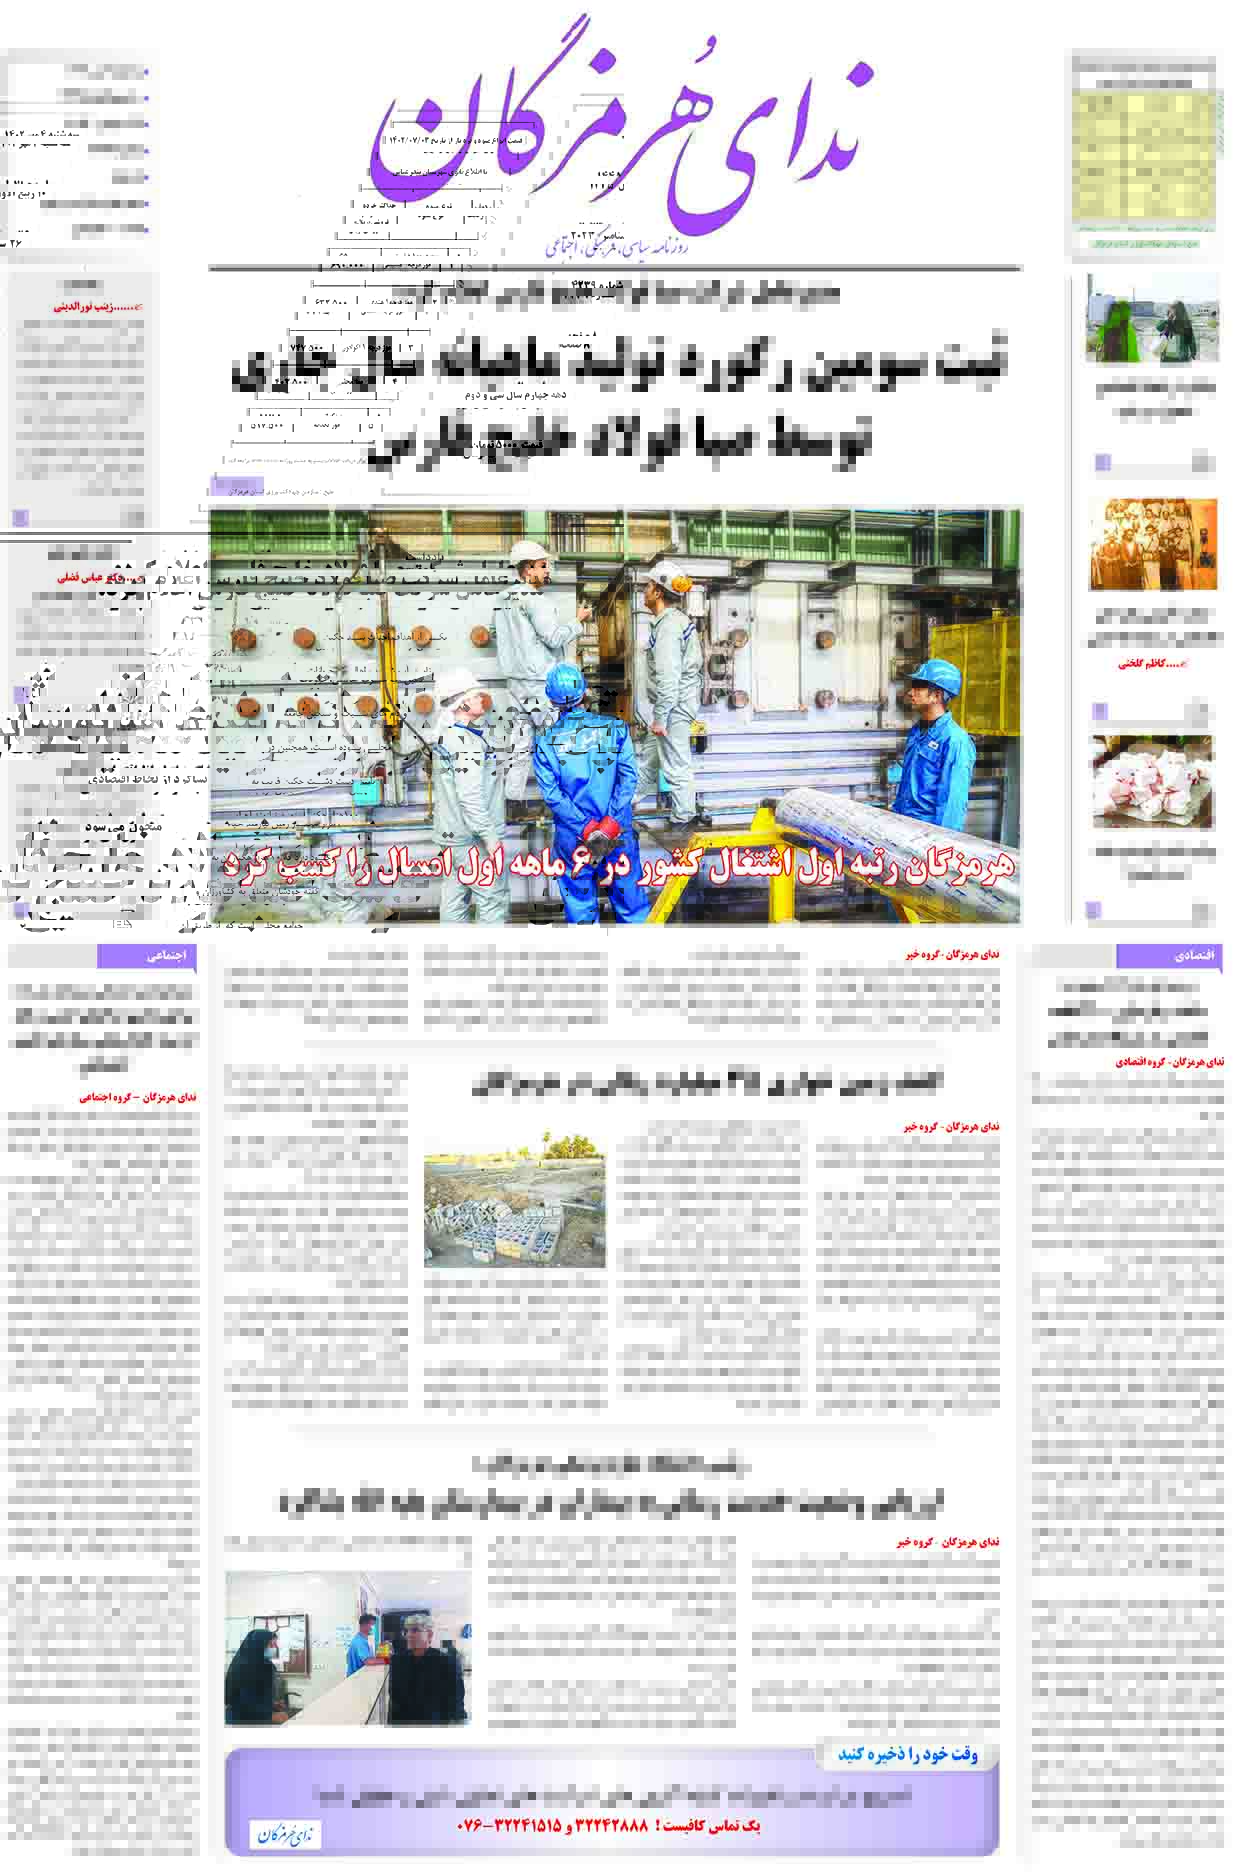 11 9 - عضو شورای شهر قشم: واگذاری سوله برگ سبز به شرکت تعاونی کارکنان منطقه آزاد خلاف قانون بود